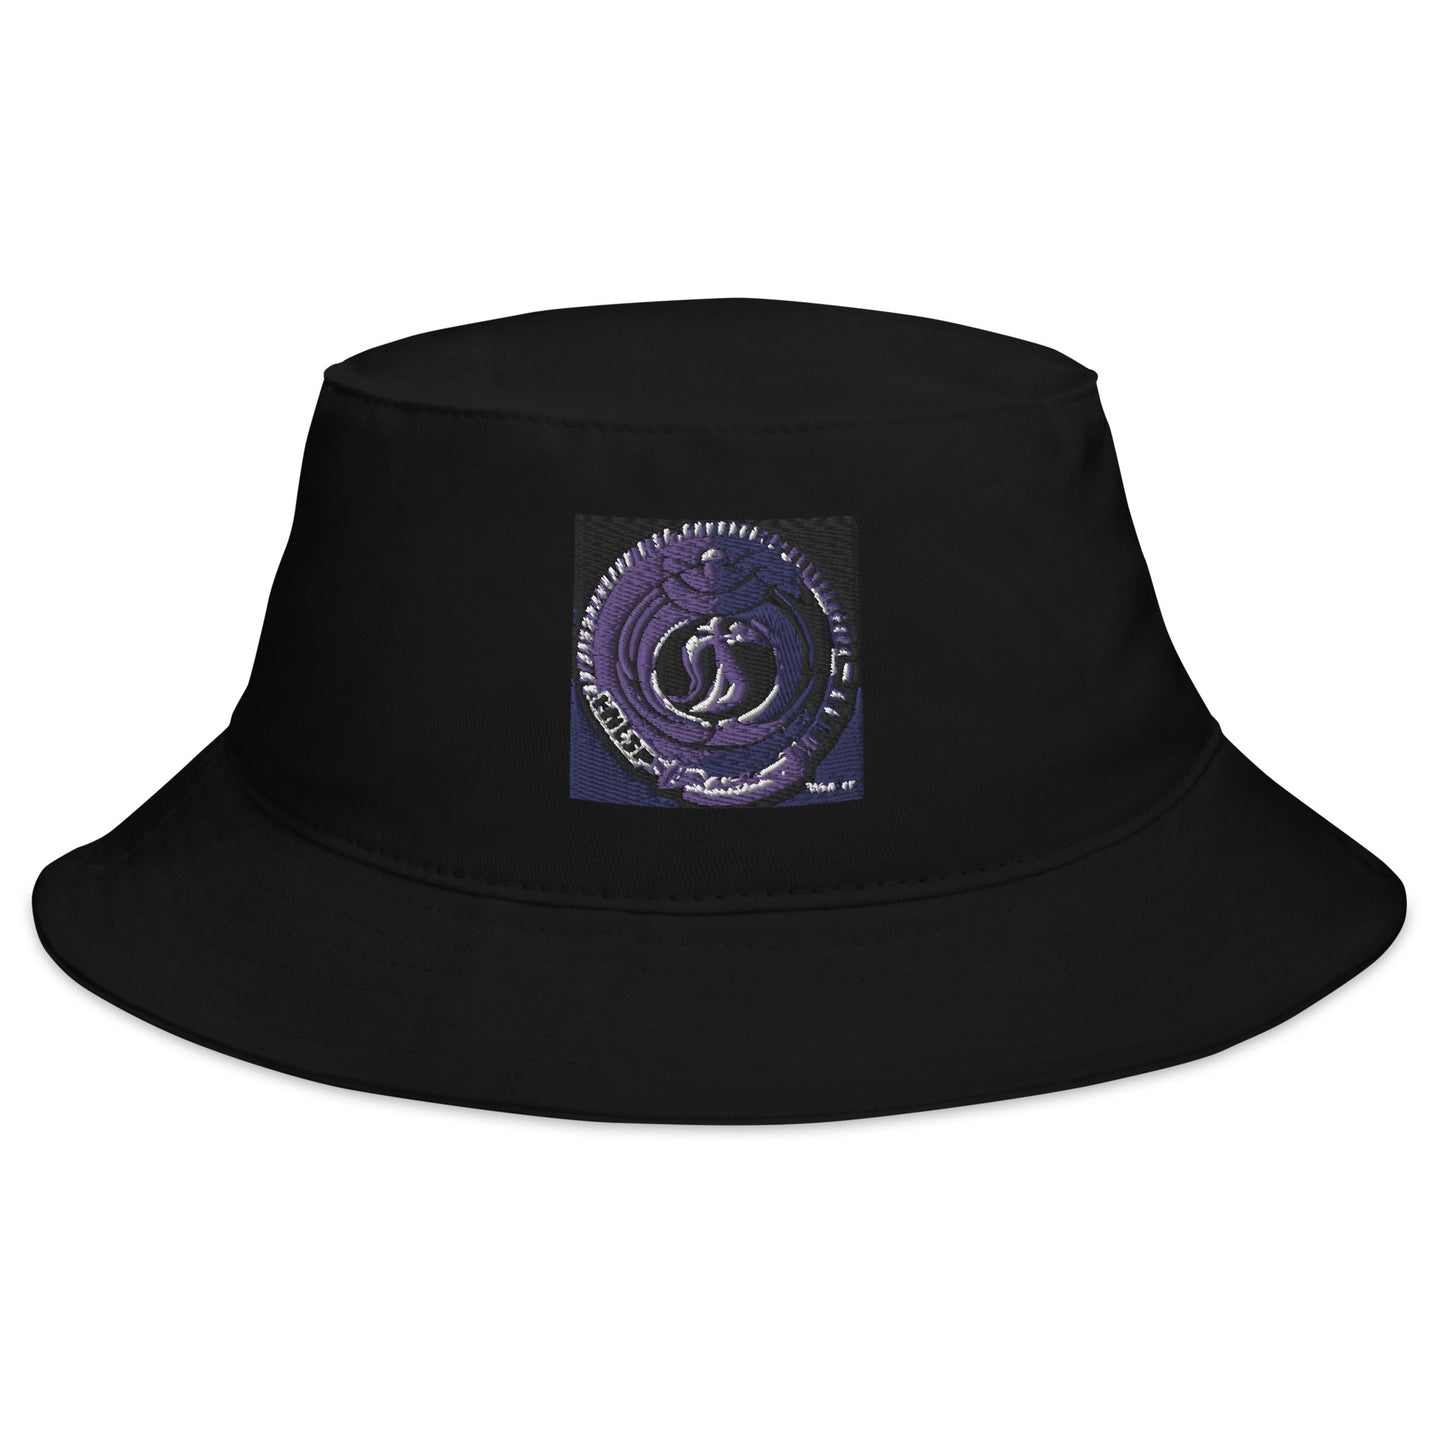 R&RH Emblem Bucket Hat